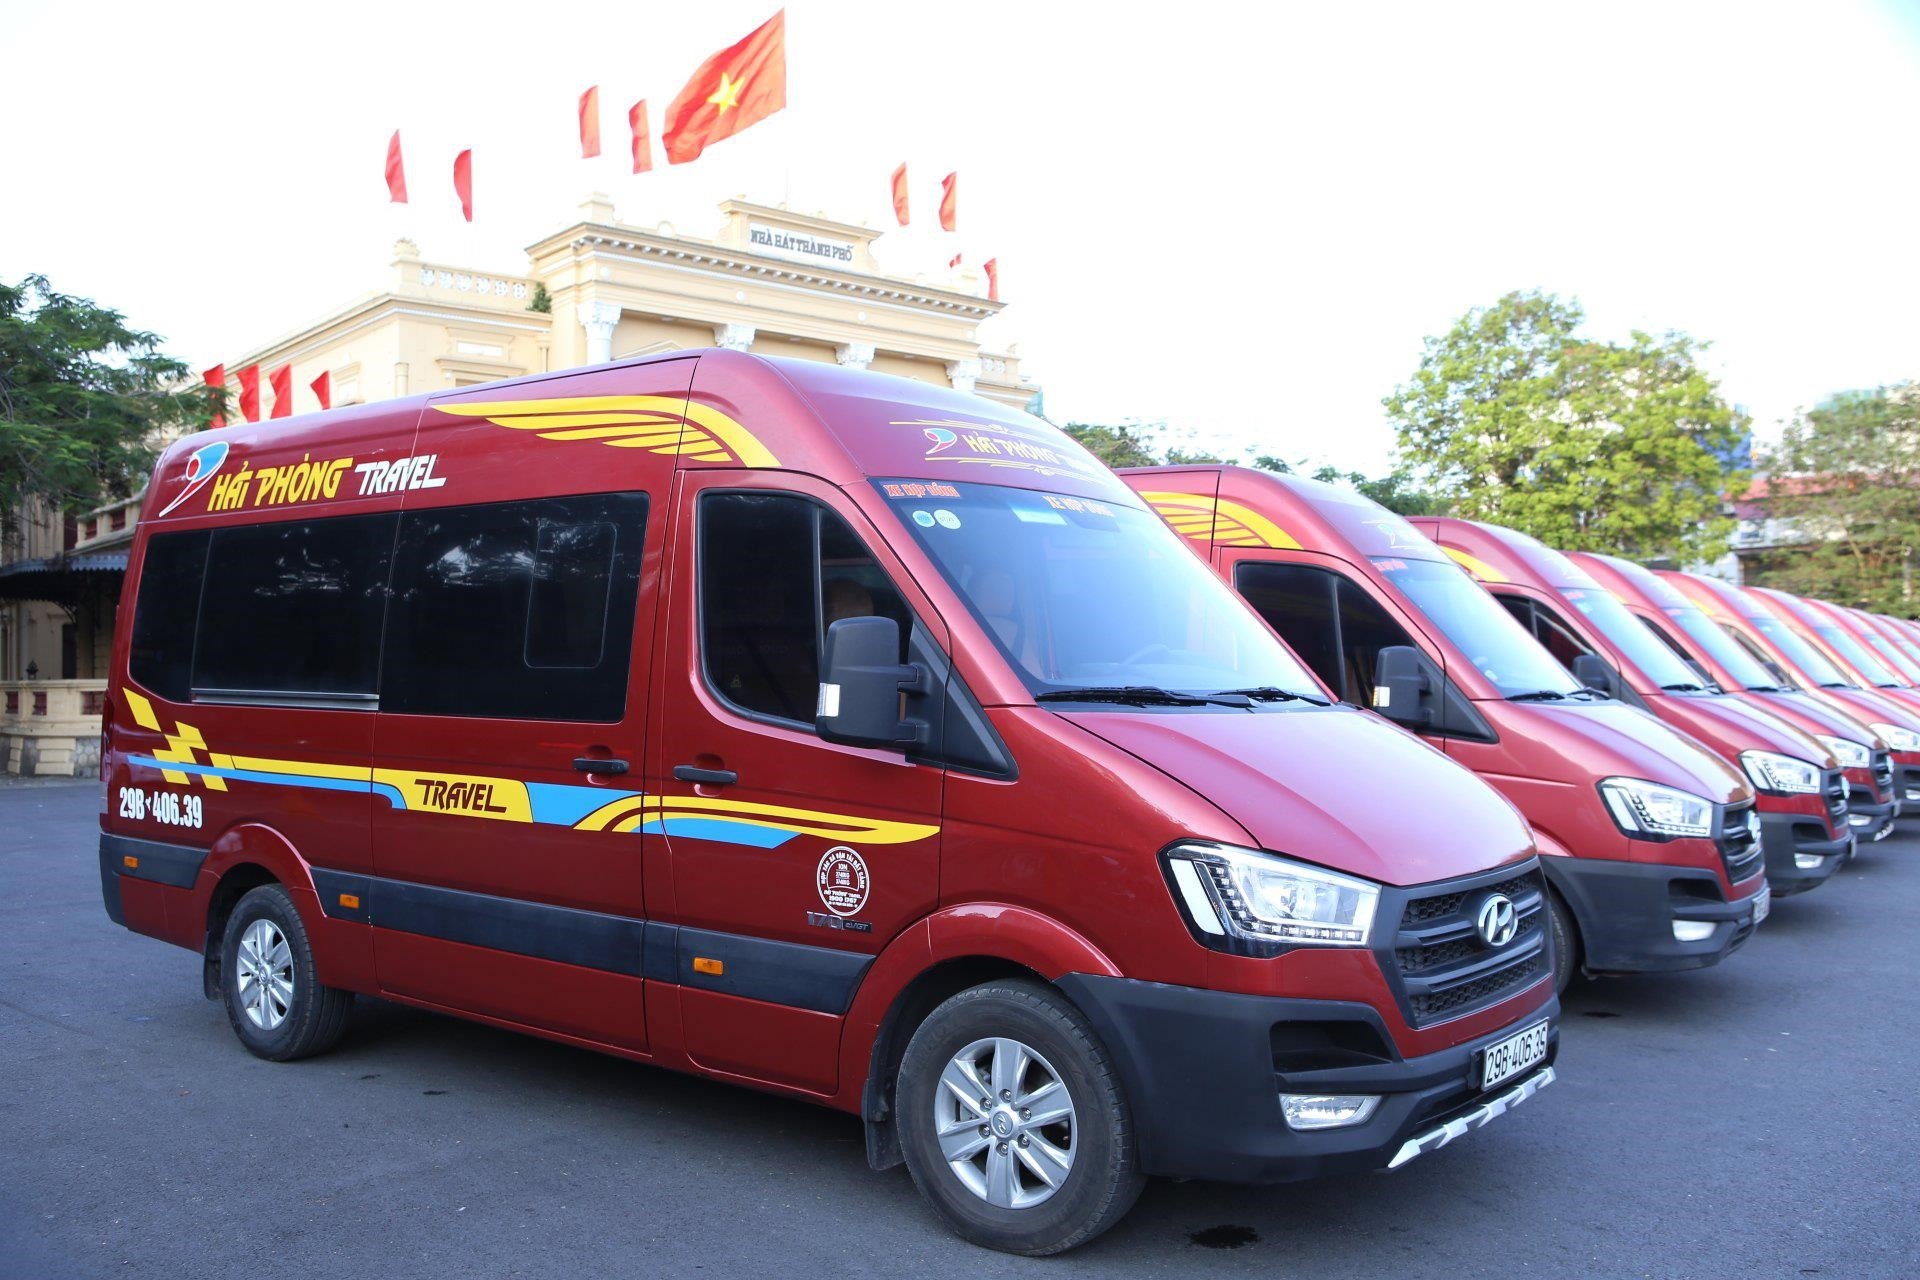 Xe đưa đón sân Hai Phong Travel là dịch vụ vận chuyển cung cấp bởi công ty du lịch Hai Phong Travel, đảm bảo sự thuận tiện và an toàn cho khách hàng khi di chuyển từ sân bay đến các điểm đến trong thành phố Hải Phòng.